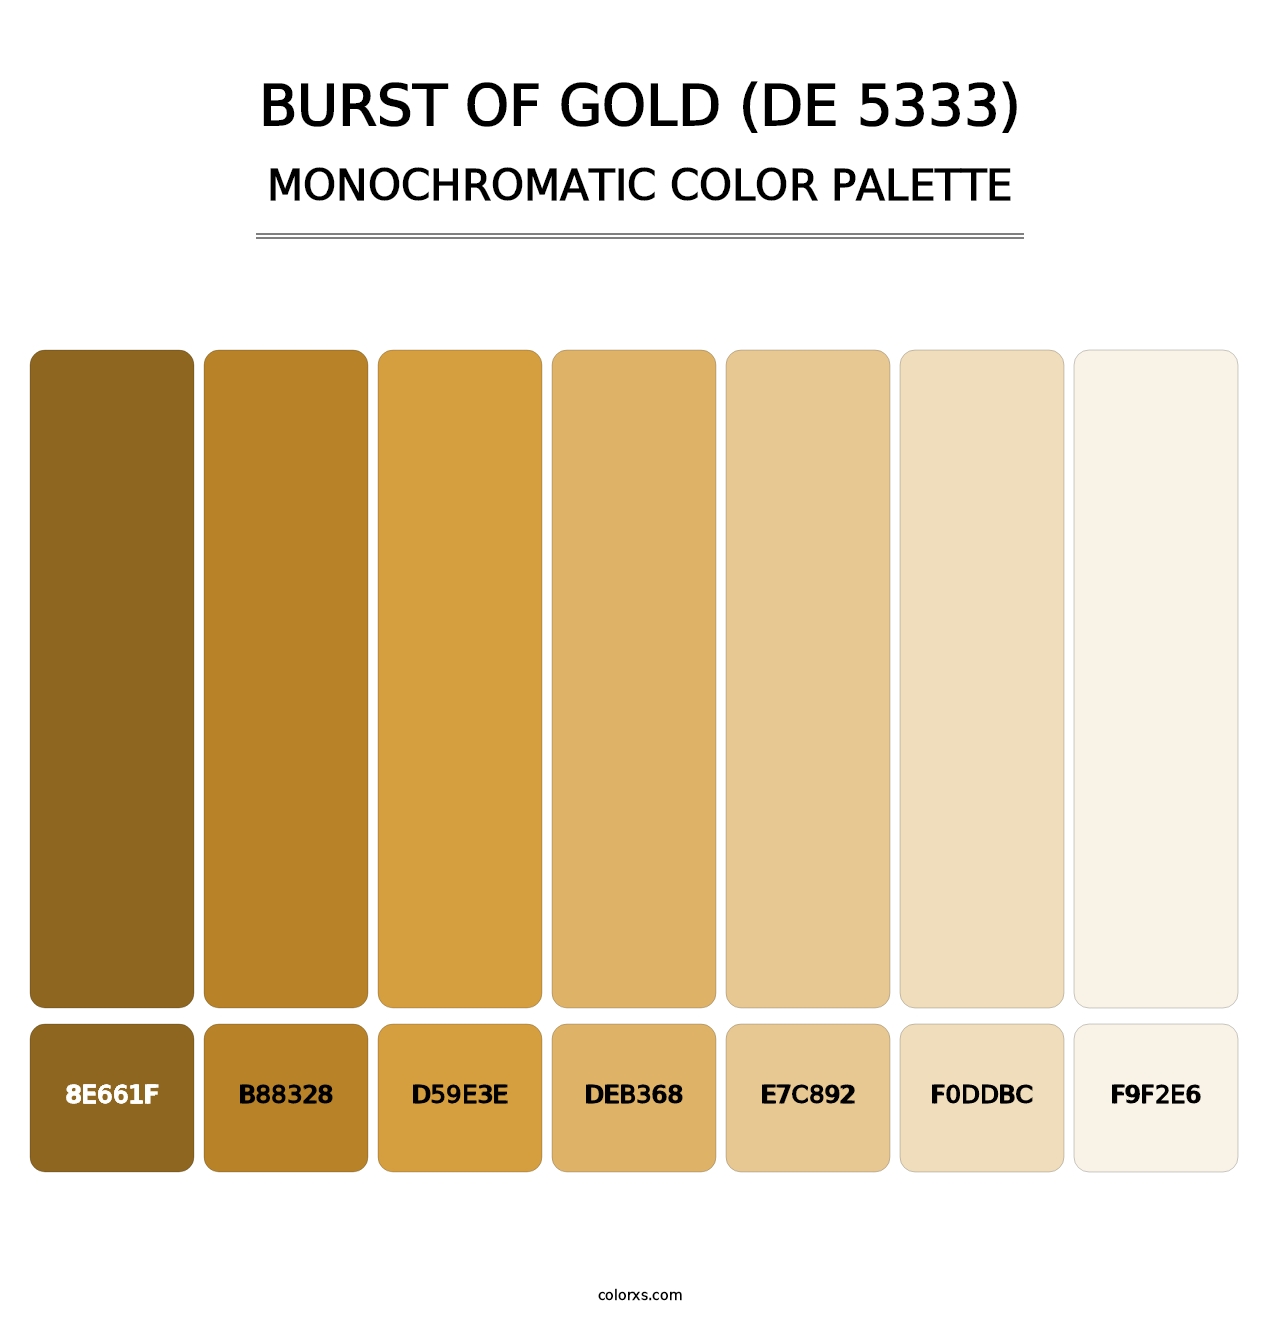 Burst of Gold (DE 5333) - Monochromatic Color Palette